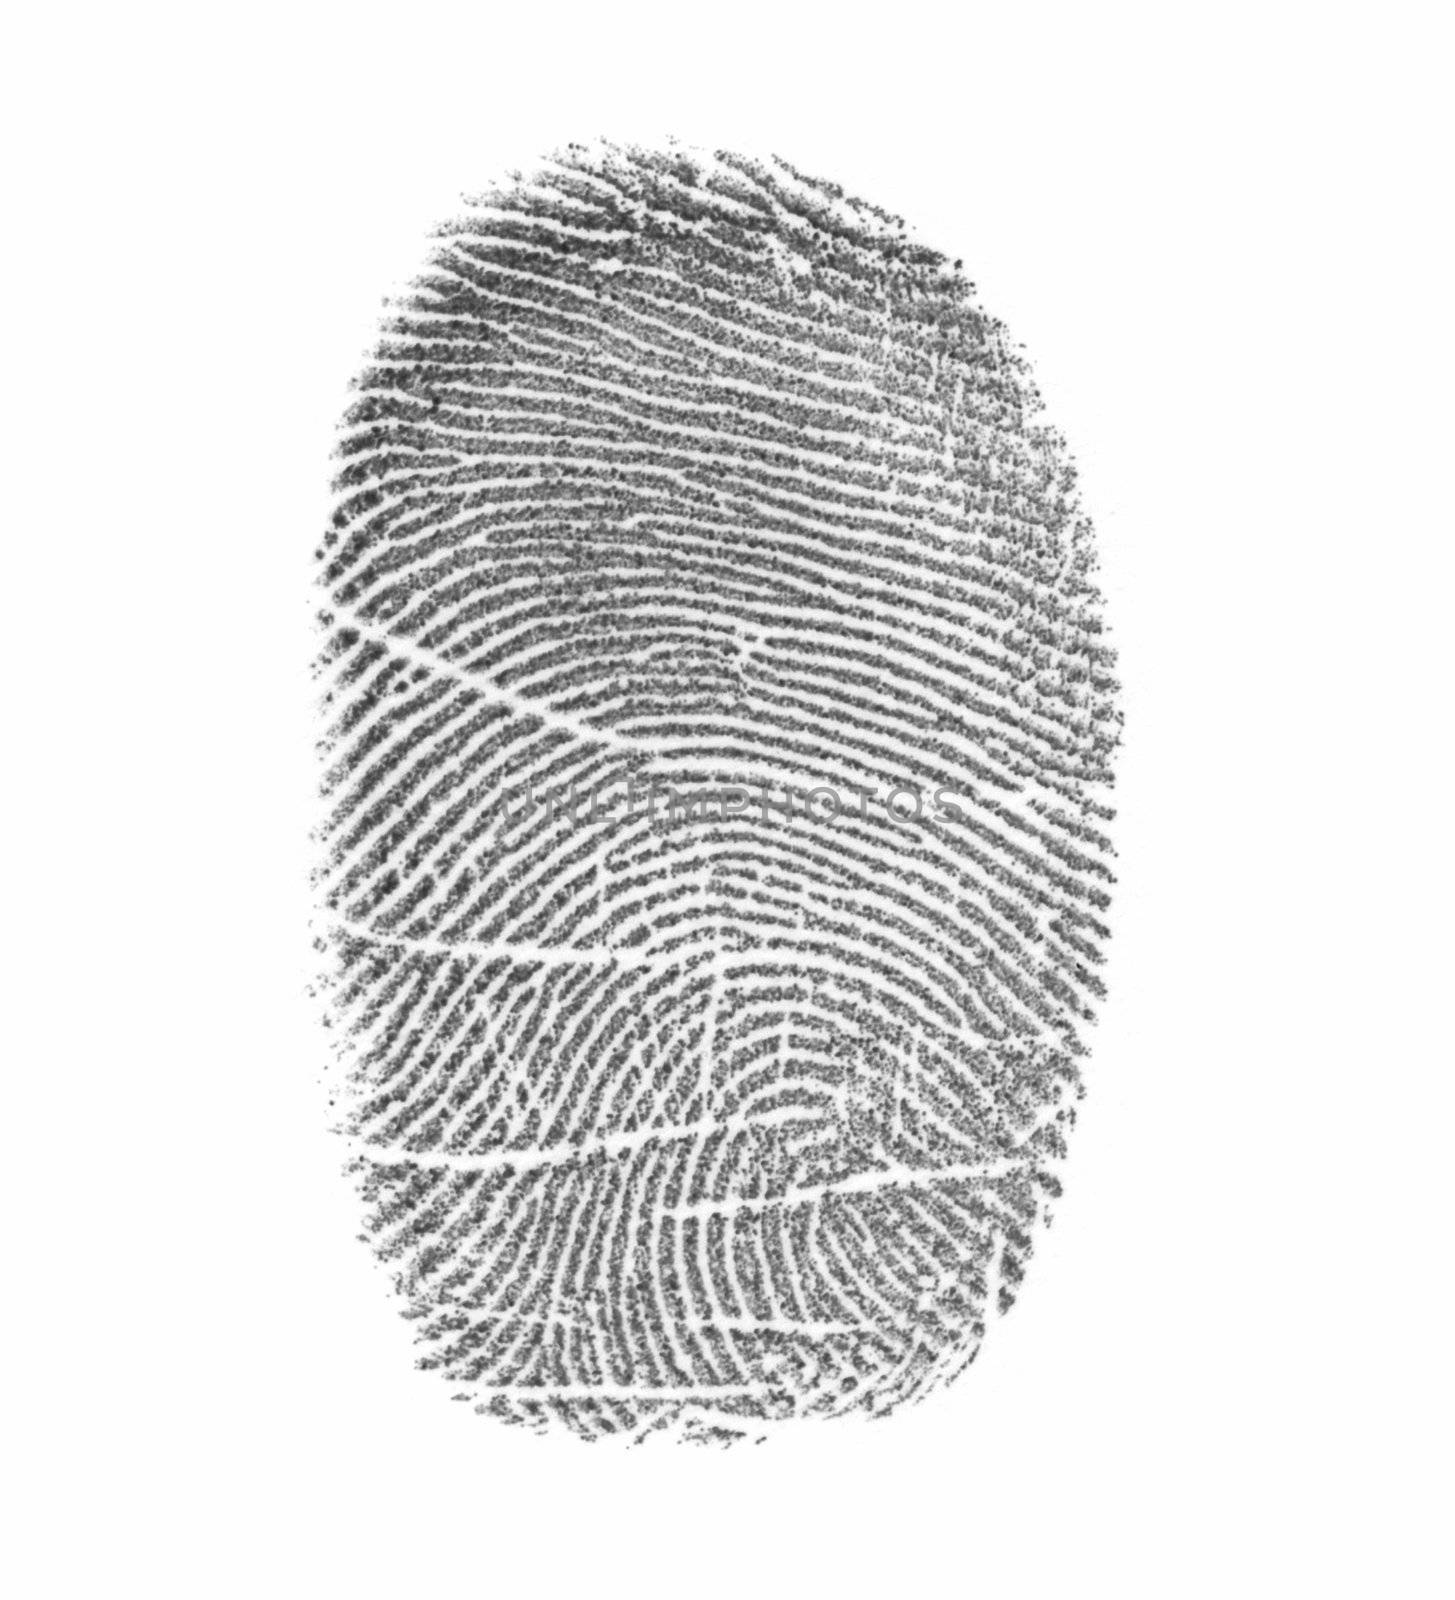 Fingerprint by pzaxe